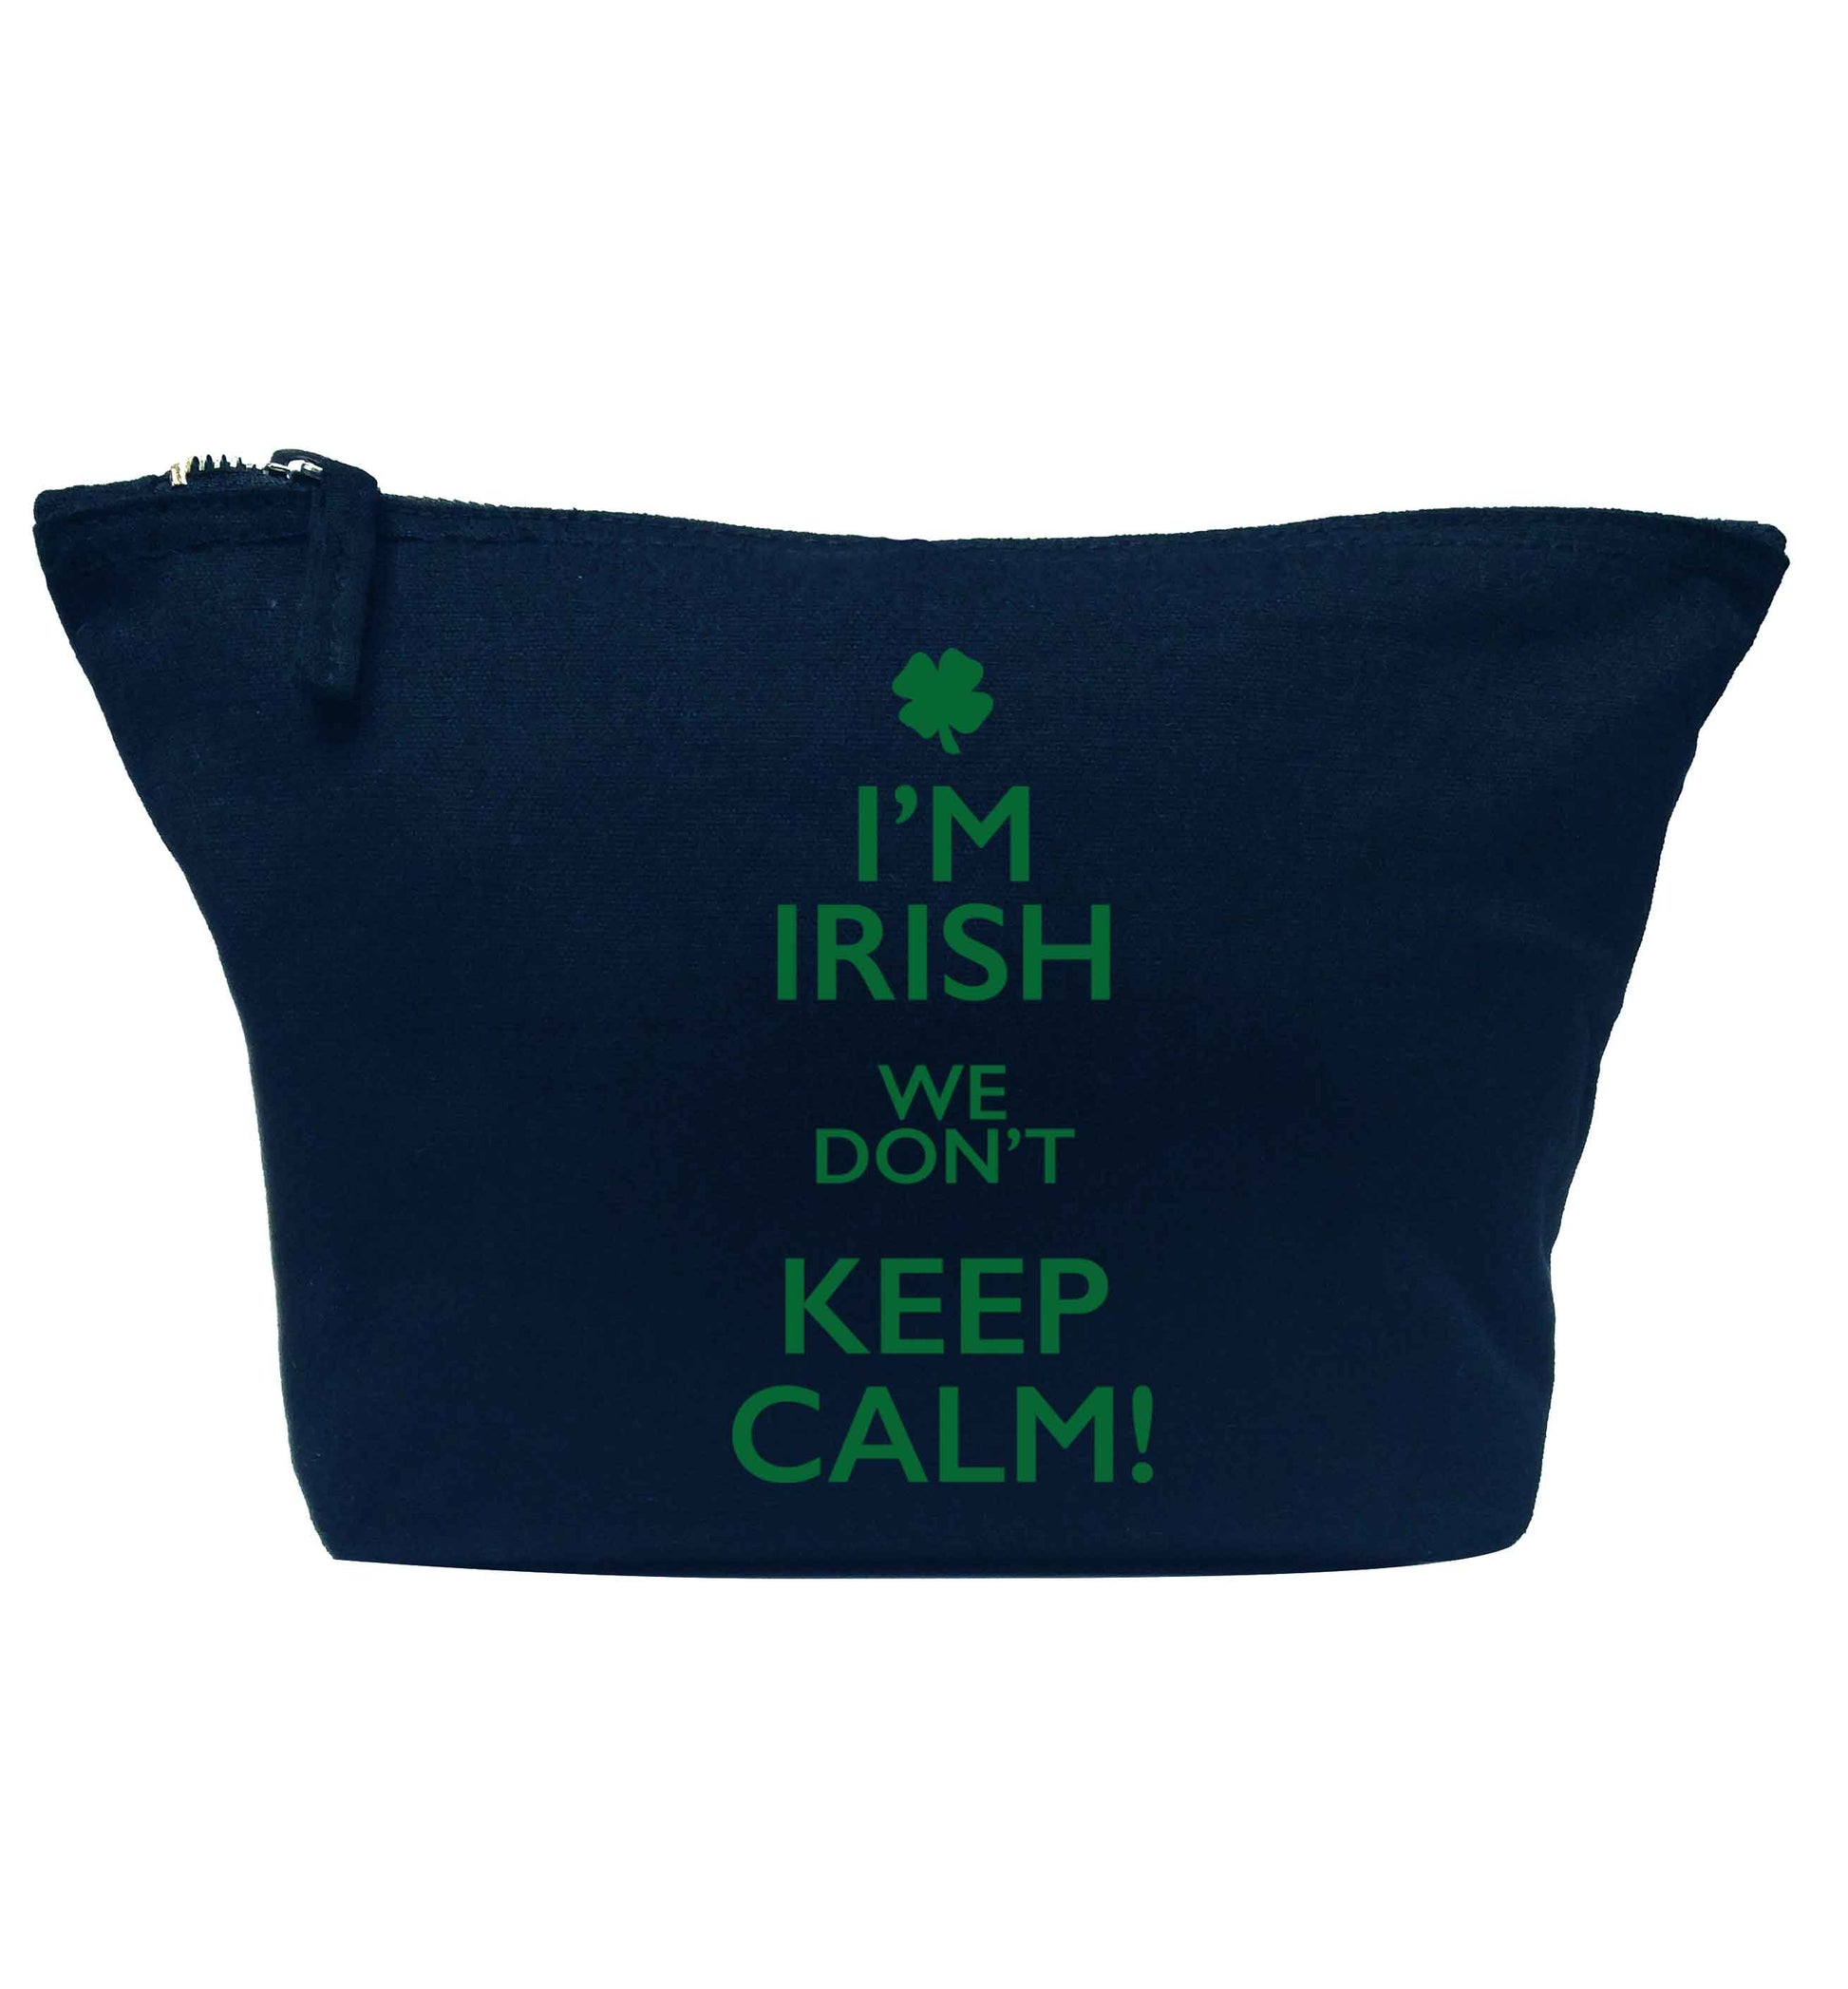 I'm Irish we don't keep calm navy makeup bag